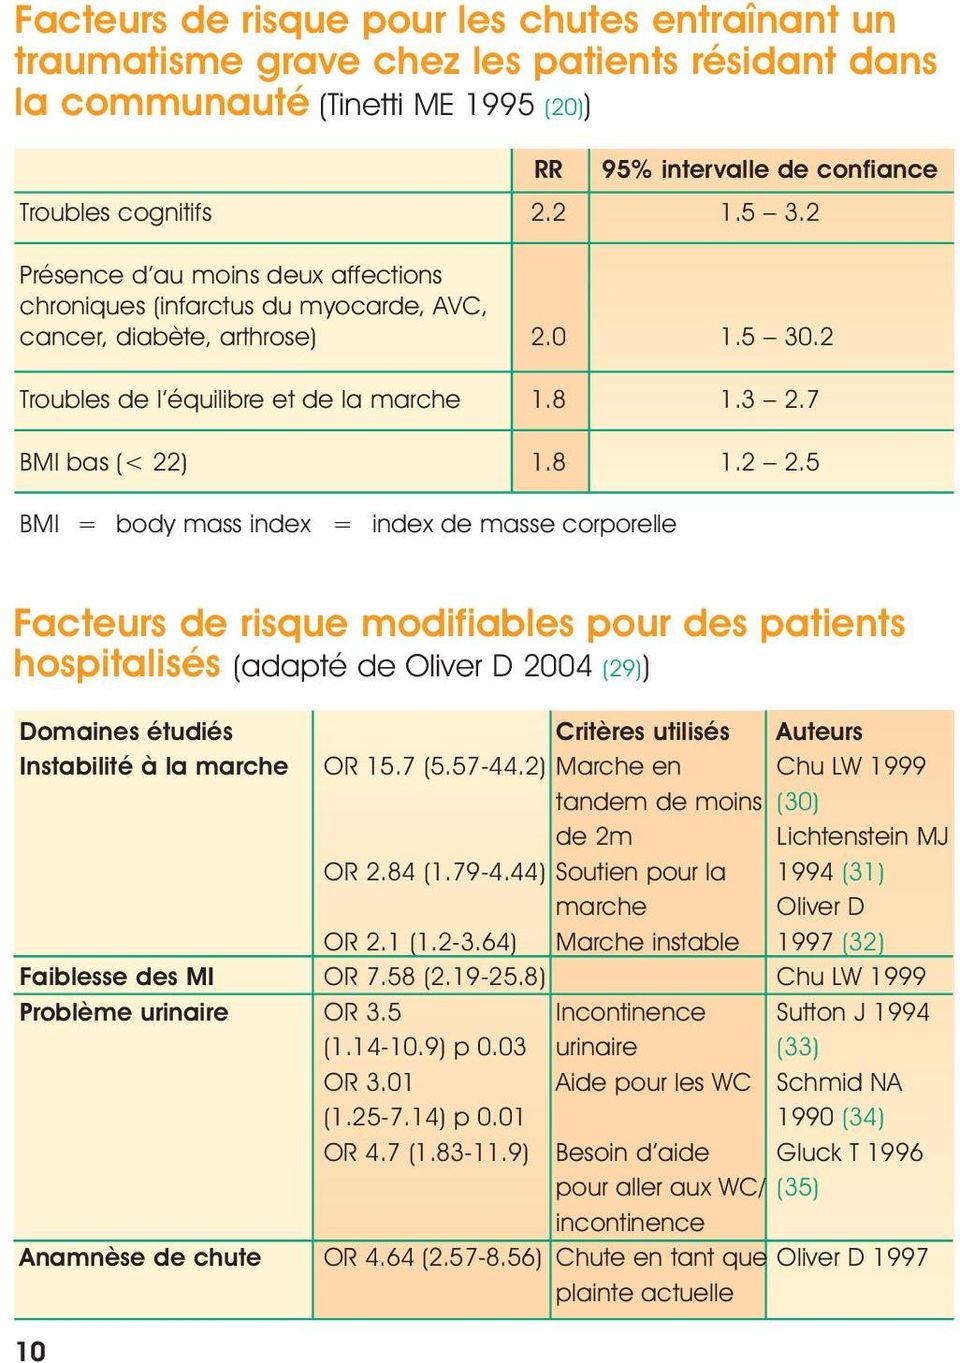 5 BMI = body mass index = index de masse corporelle Facteurs de risque modifiables pour des patients hospitalisés (adapté de Oliver D 2004 (29)) Domaines étudiés Critères utilisés Auteurs Instabilité